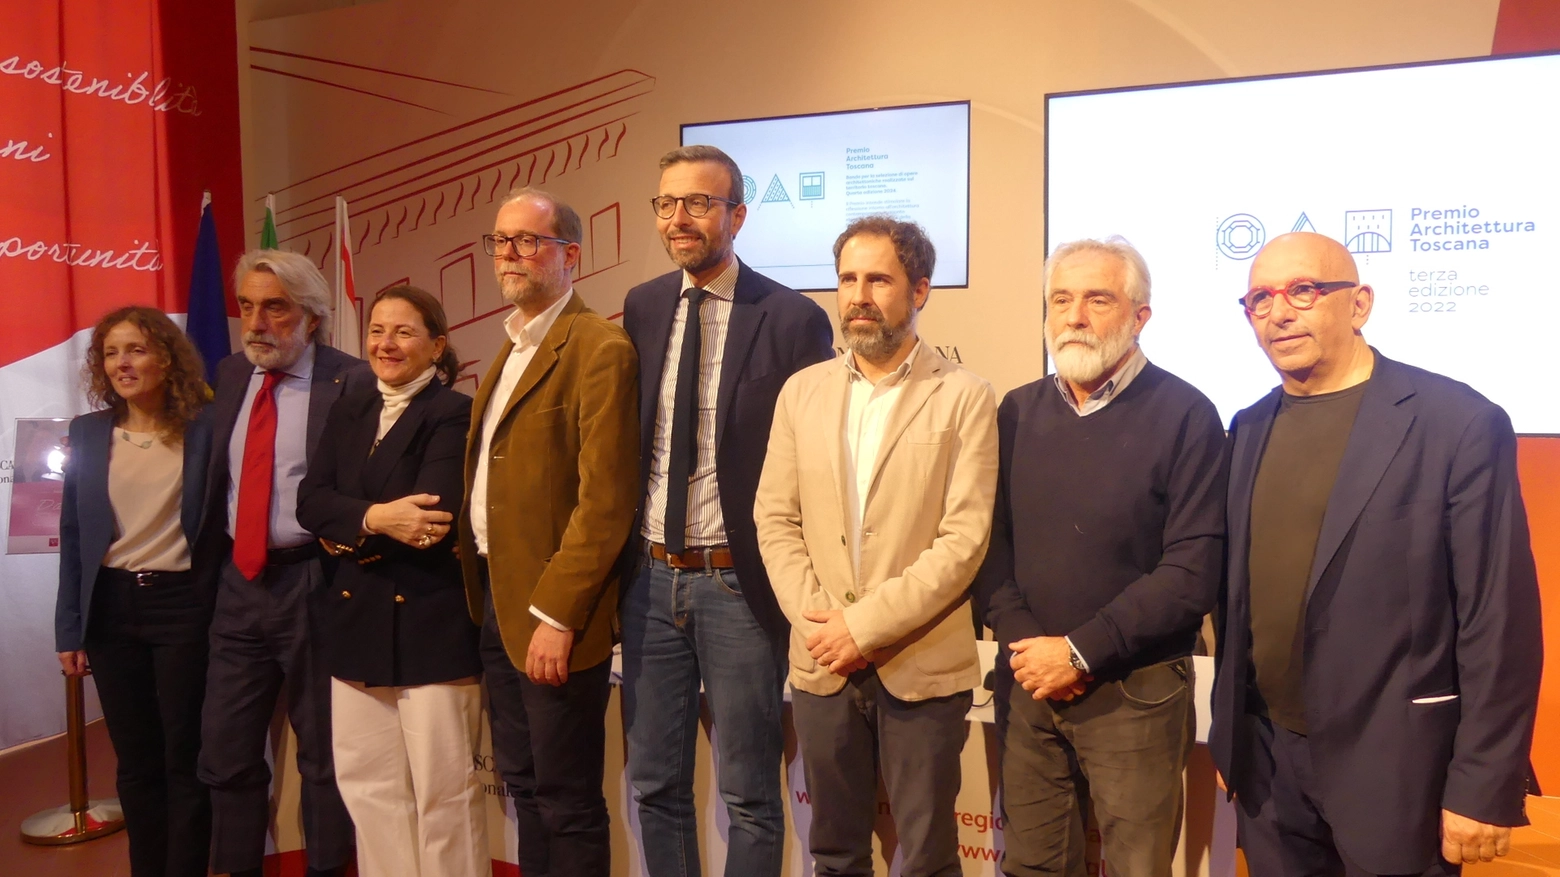 La presentazione del Premio Architettura Toscana 